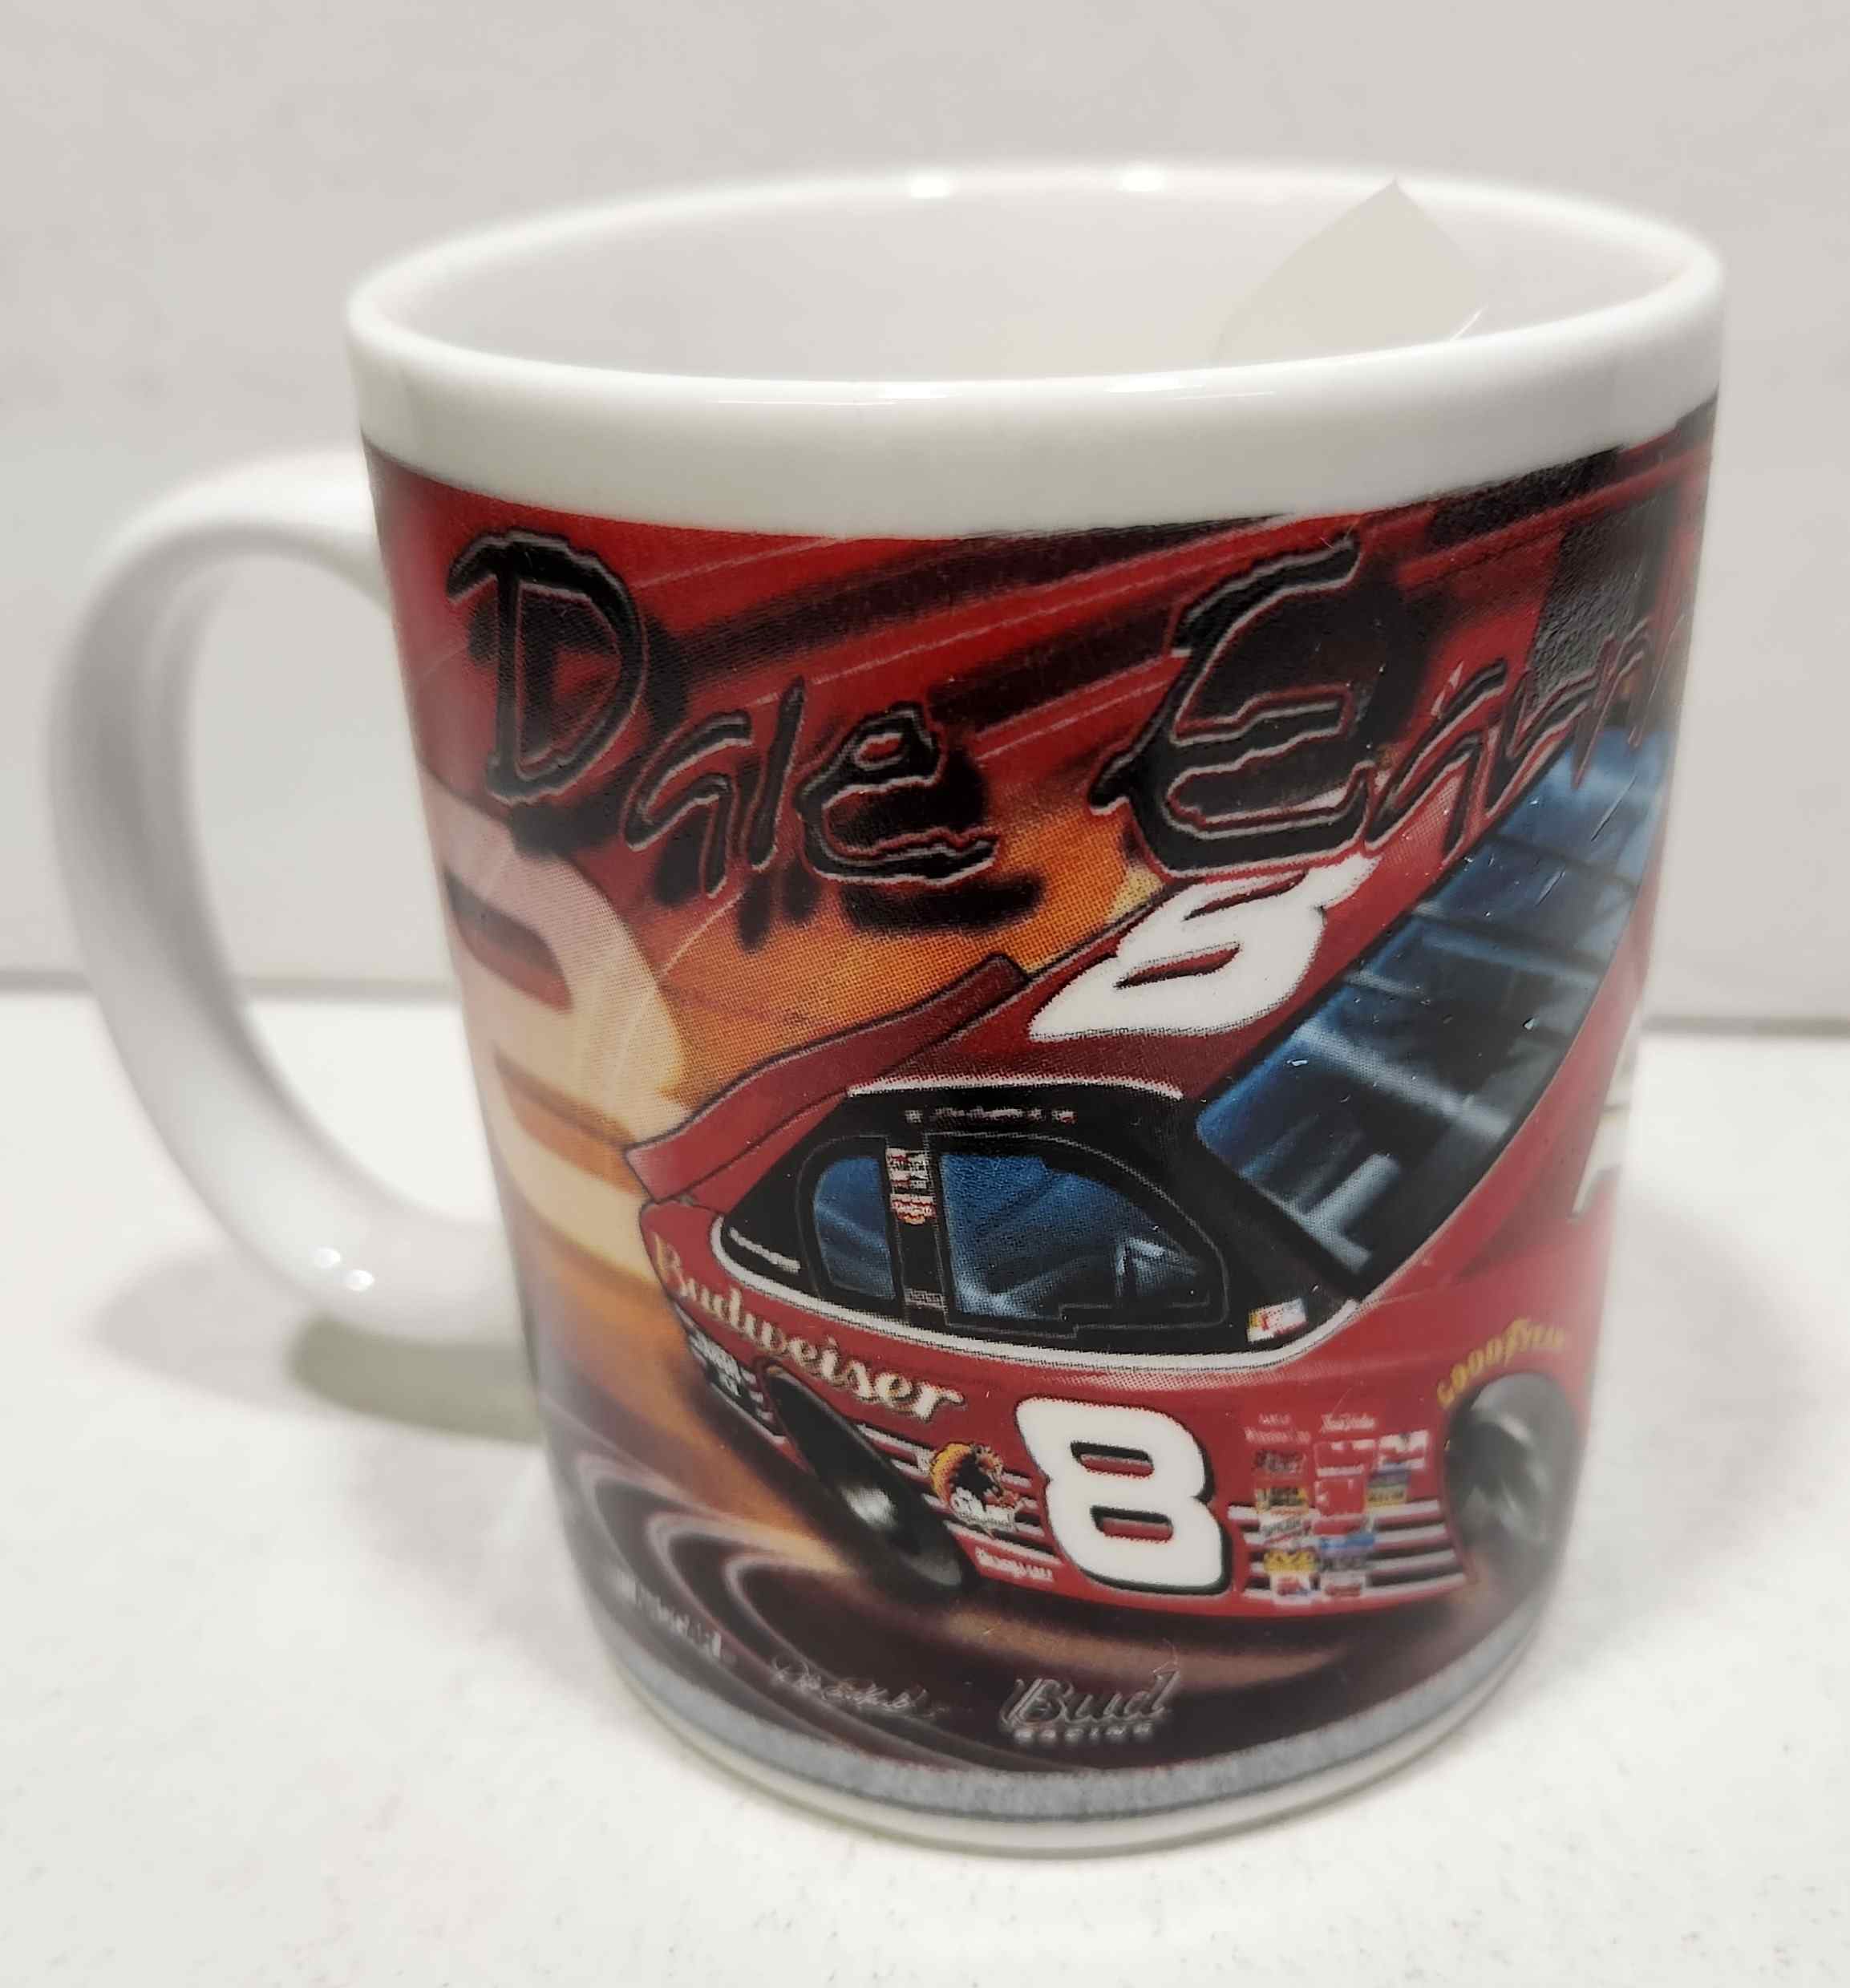 2002 Dale Earnhardt Jr Budweiser 11 oz. collectors mug